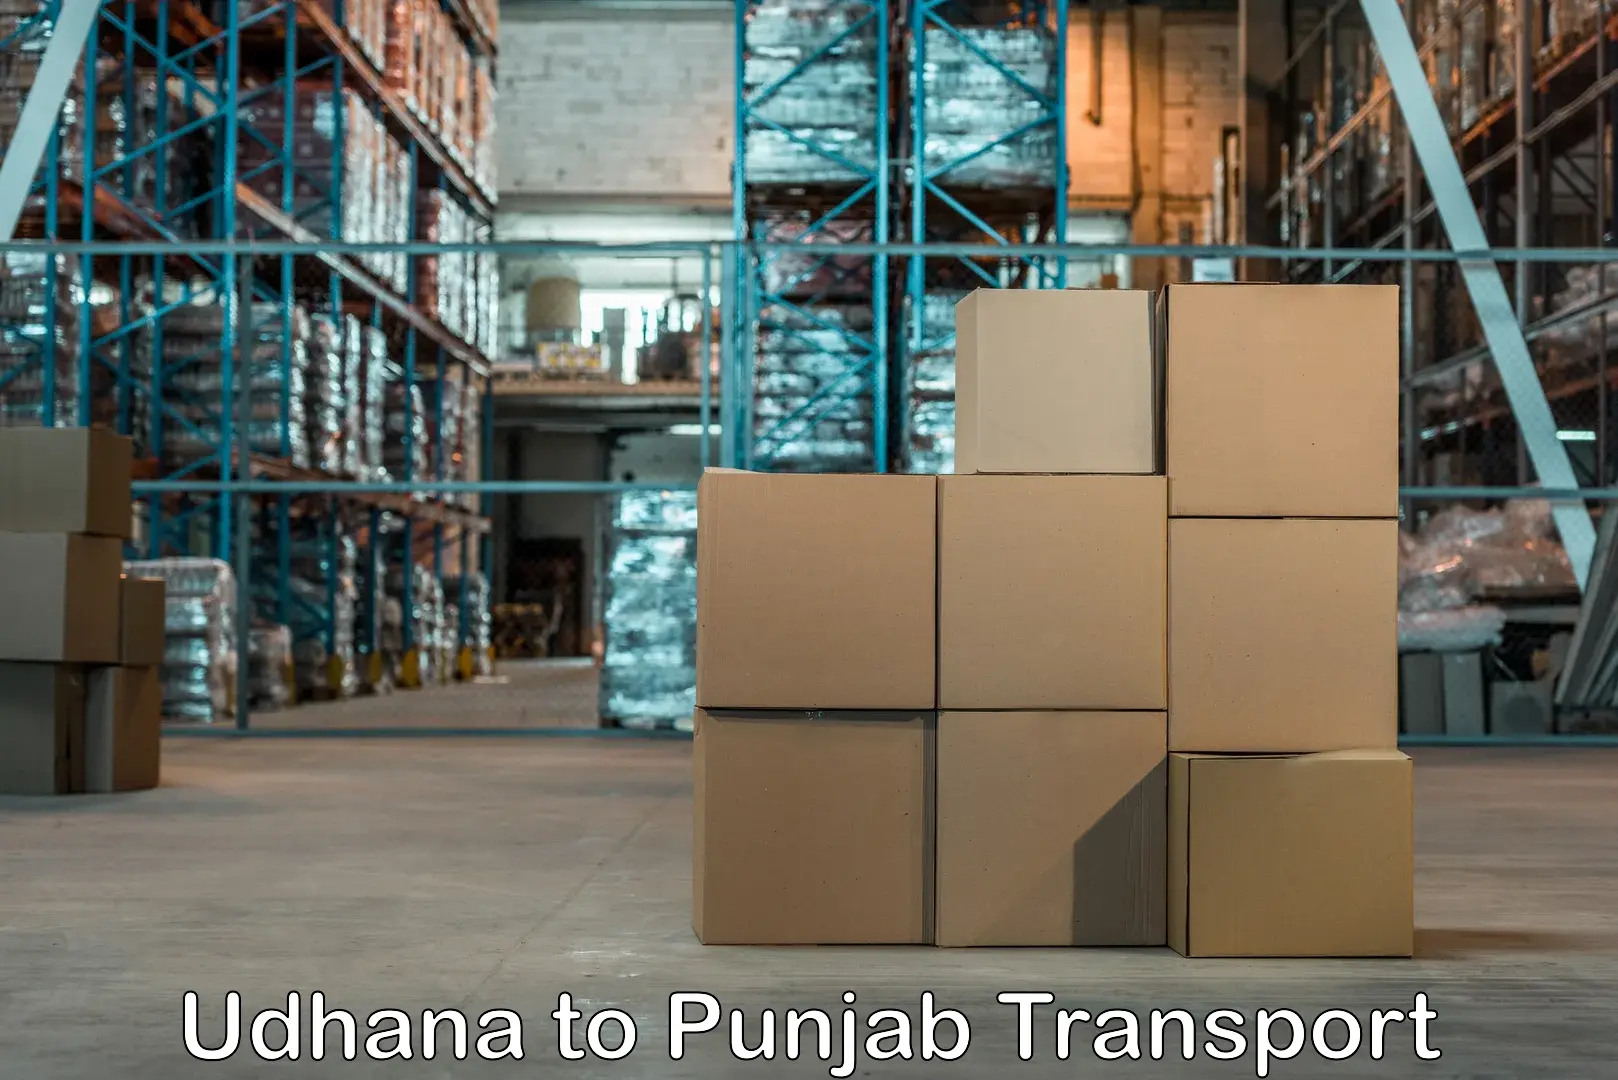 Online transport service Udhana to Punjab